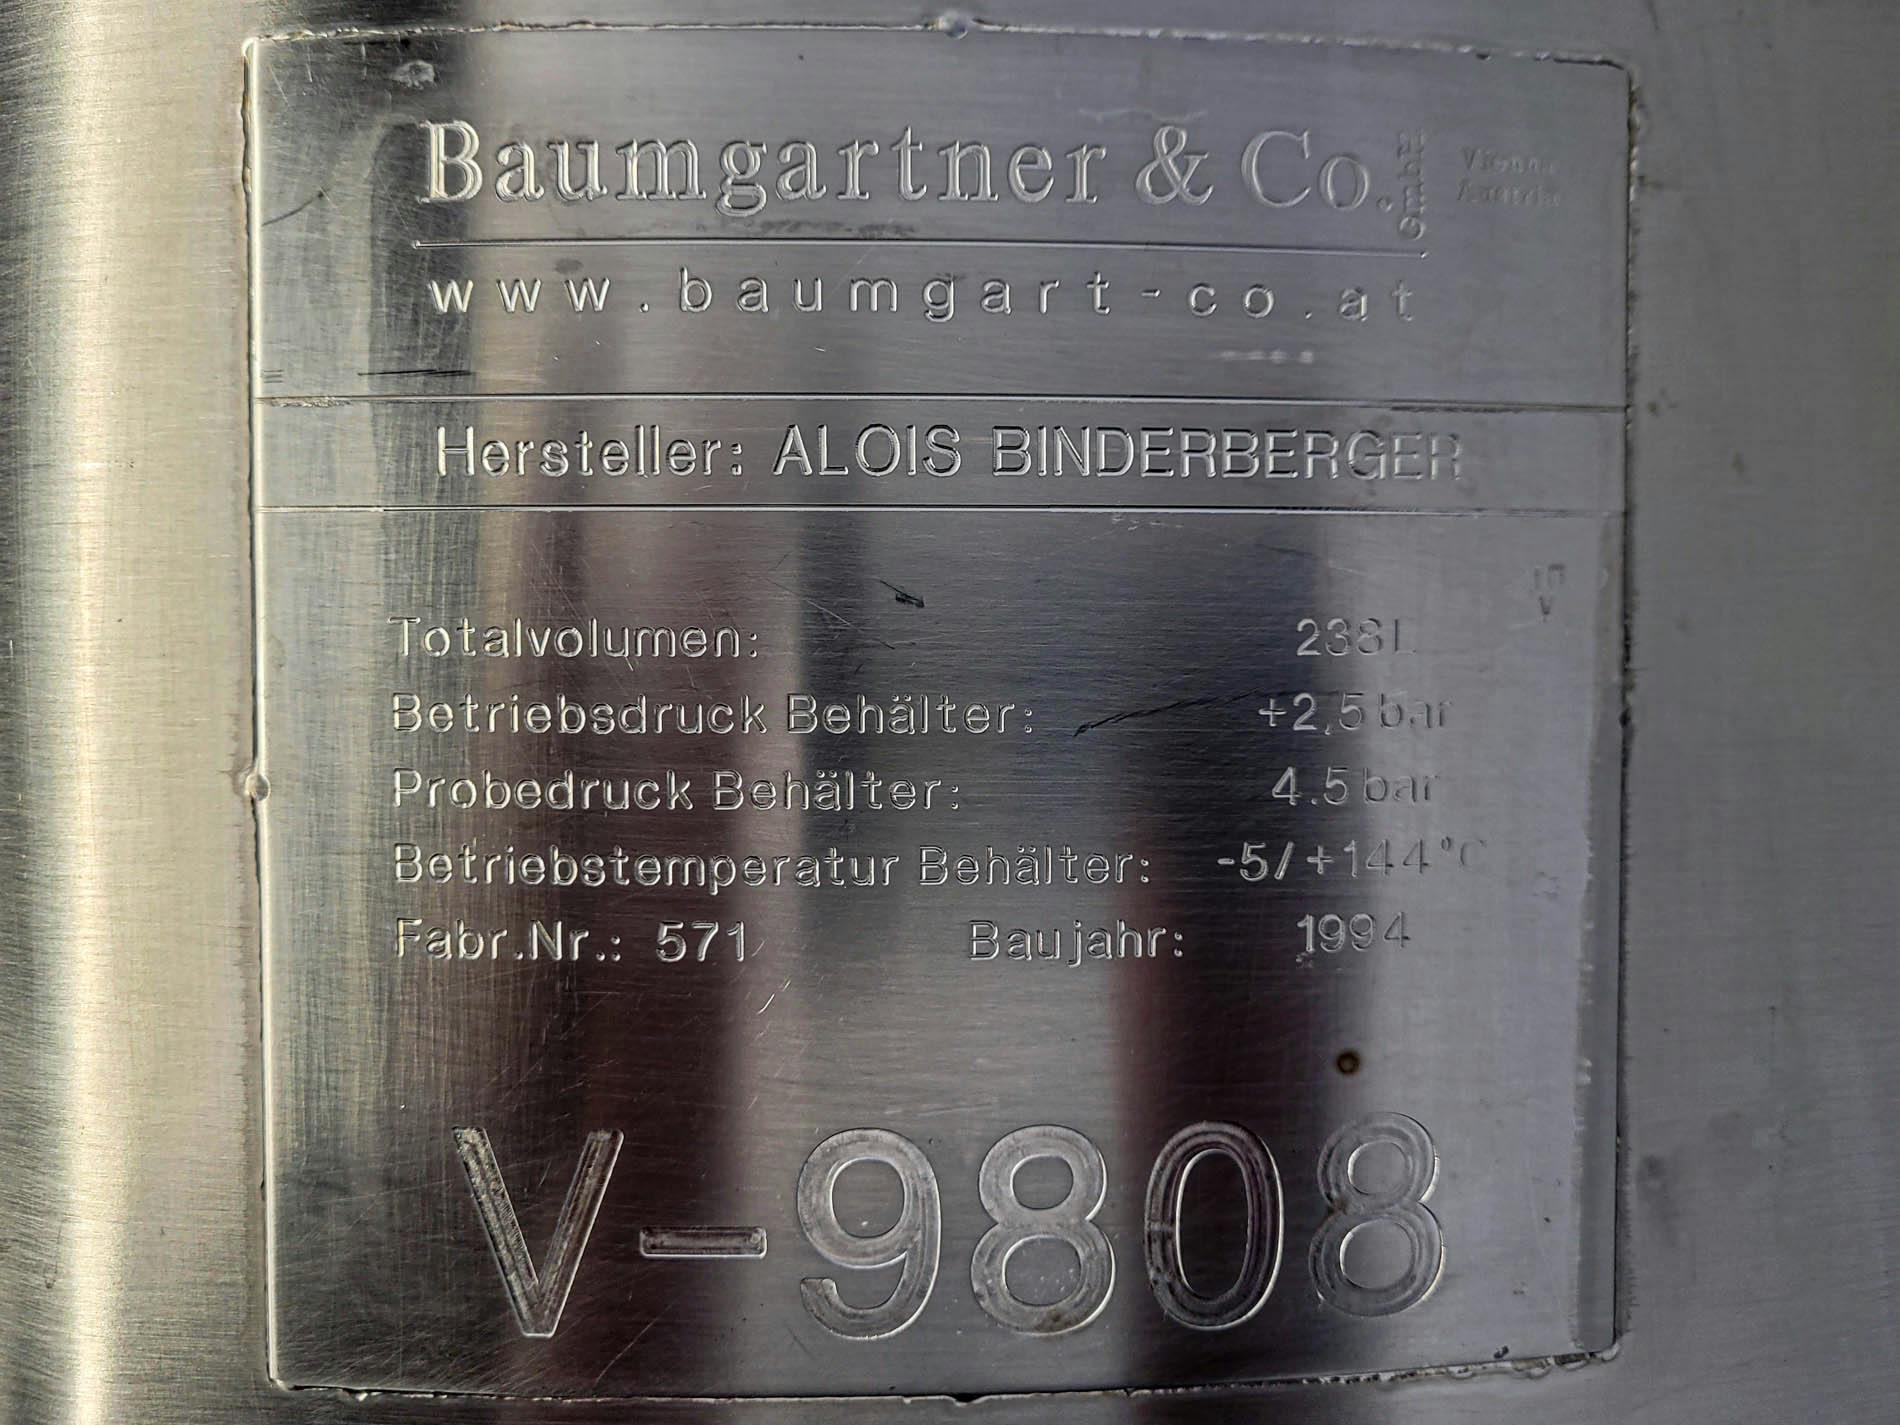 Baumgartner 238 Ltr. - Pressure vessel - image 11